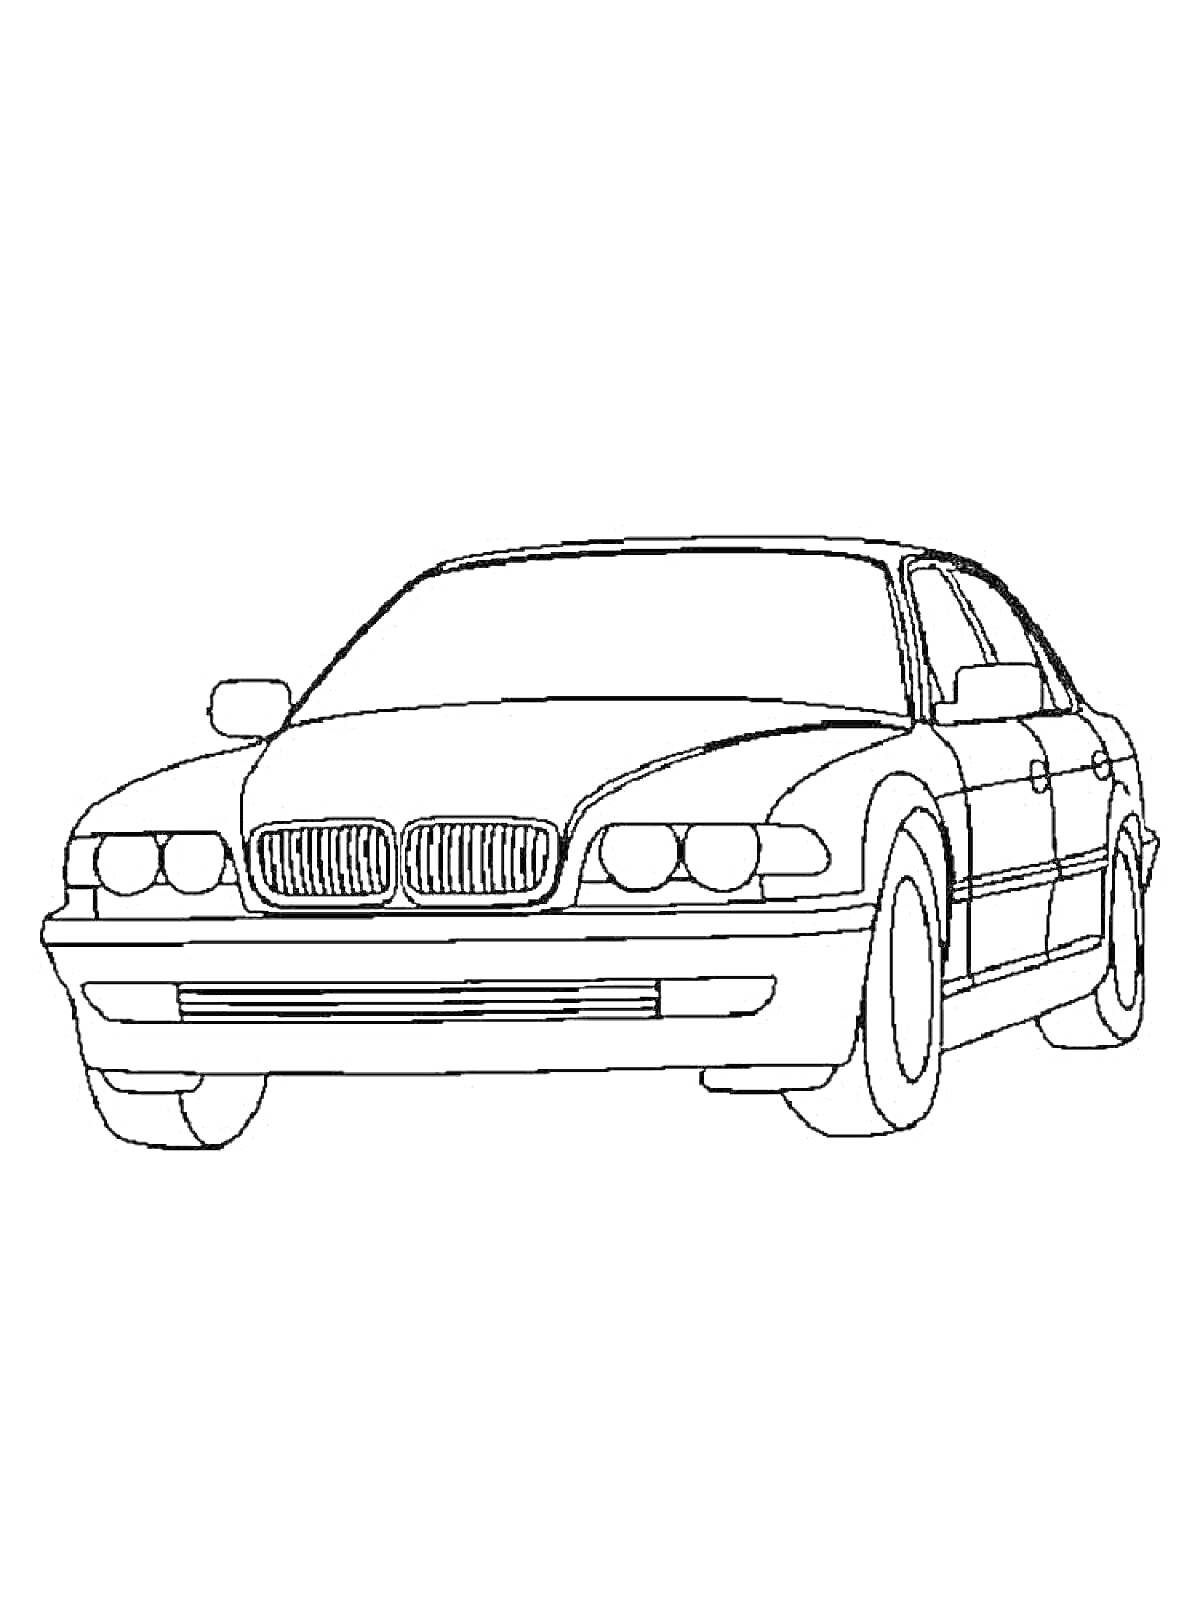 Раскраска Раскраска с изображением BMW седана с решеткой радиатора, фарами, капотом, колесами и боковыми зеркалами.